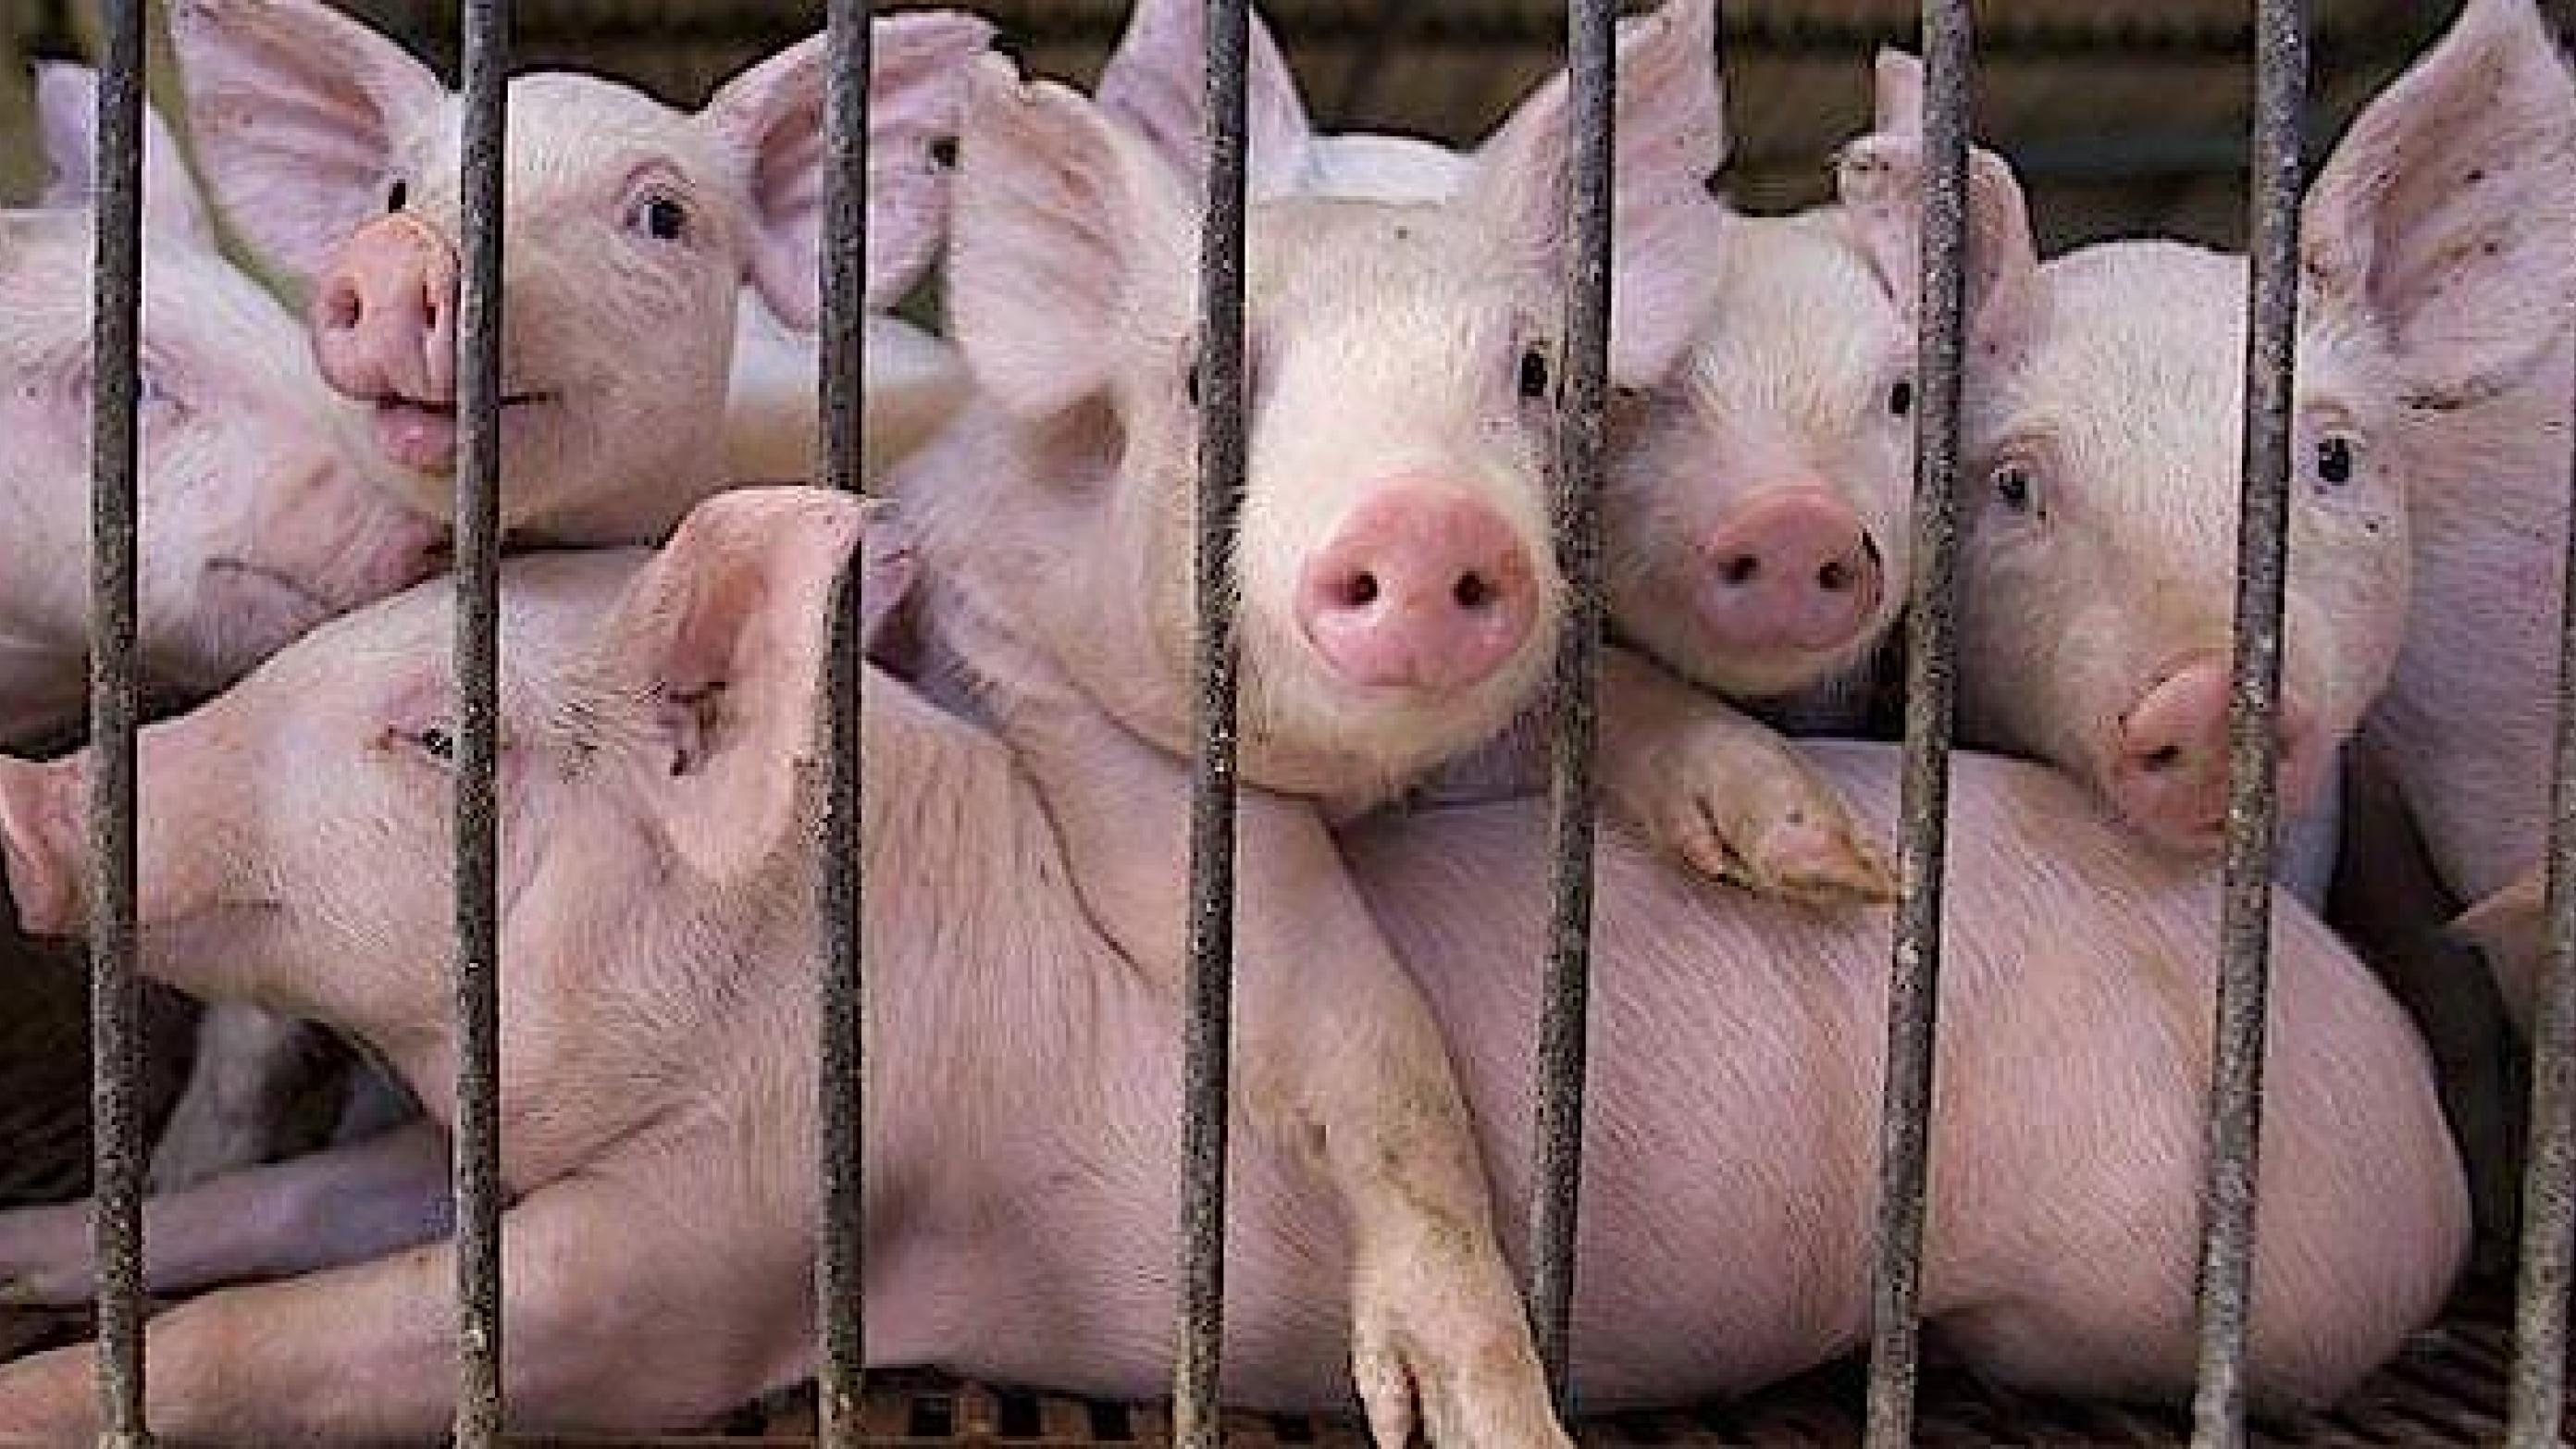 Svineproduktionen tegner sig for 78 pct. af antibiotikaforbruget i Danmark.